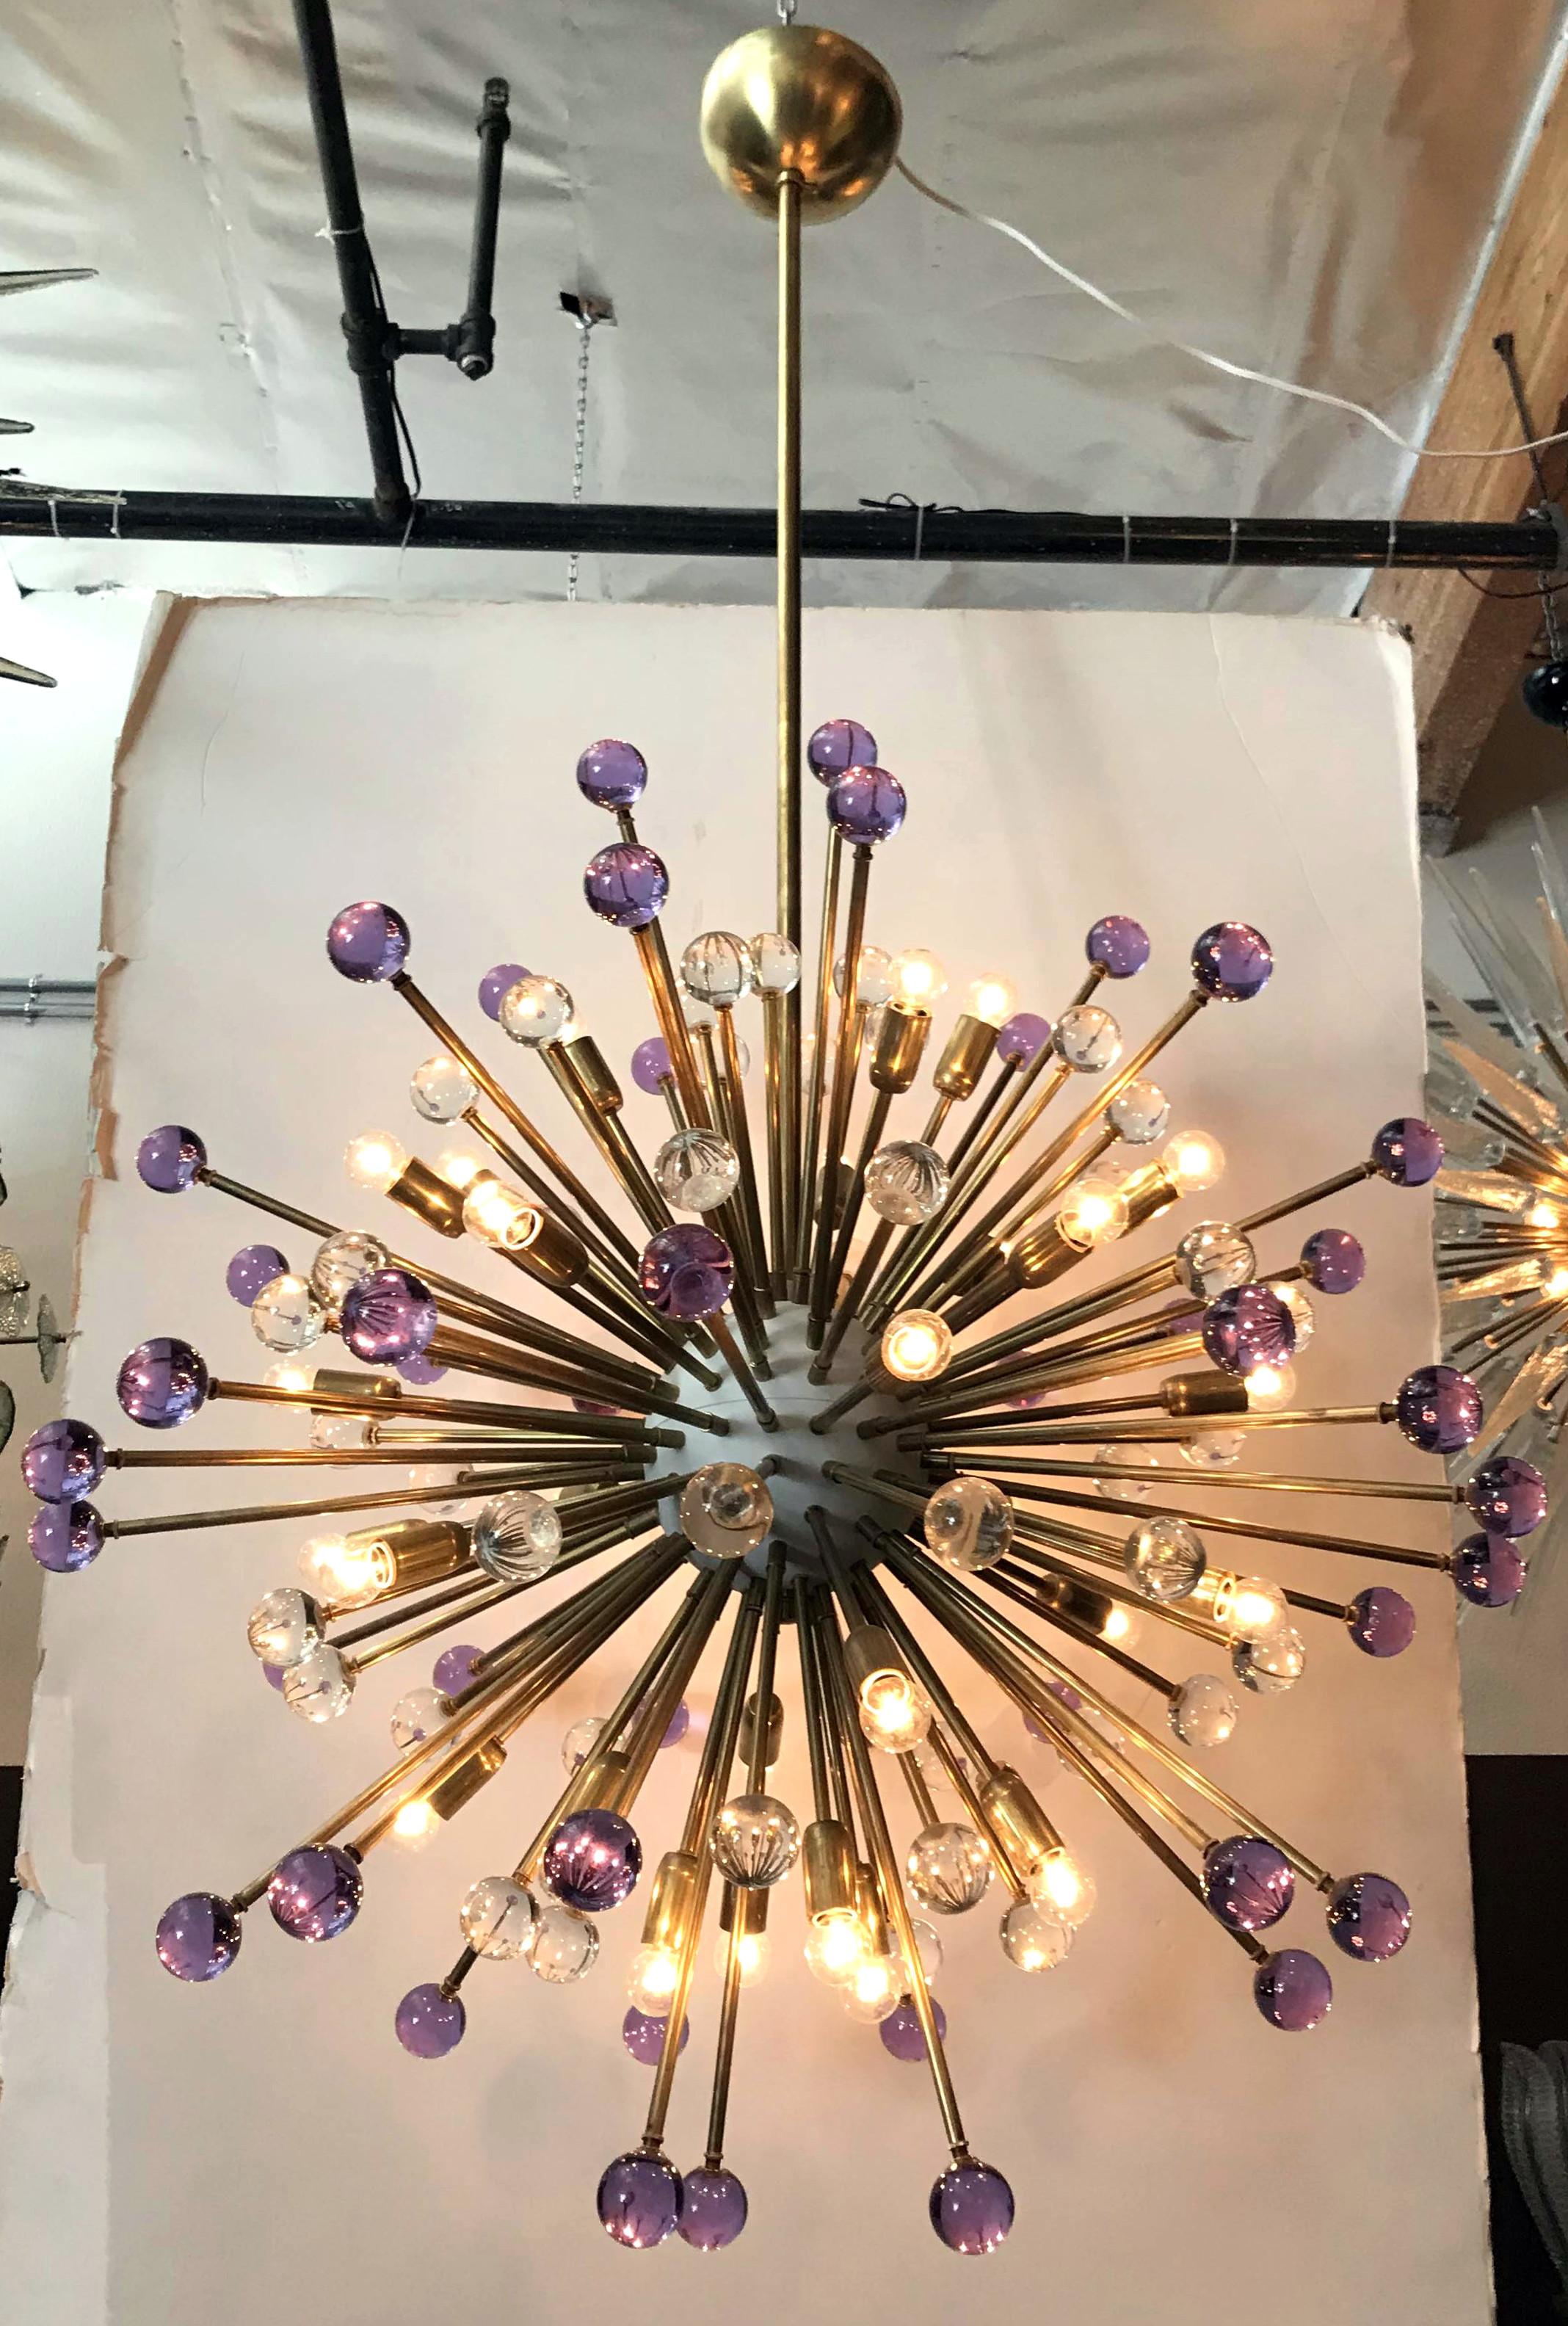 Moderne italienische Sputnik-Kronleuchter mit mundgeblasenen violetten und klaren Murano-Glaskugeln, montiert auf natürlichen Messingrahmen mit weiß emailliertem Zentrum / Entworfen von Fabio Bergomi für FABIO LTD / Hergestellt in Italien
30